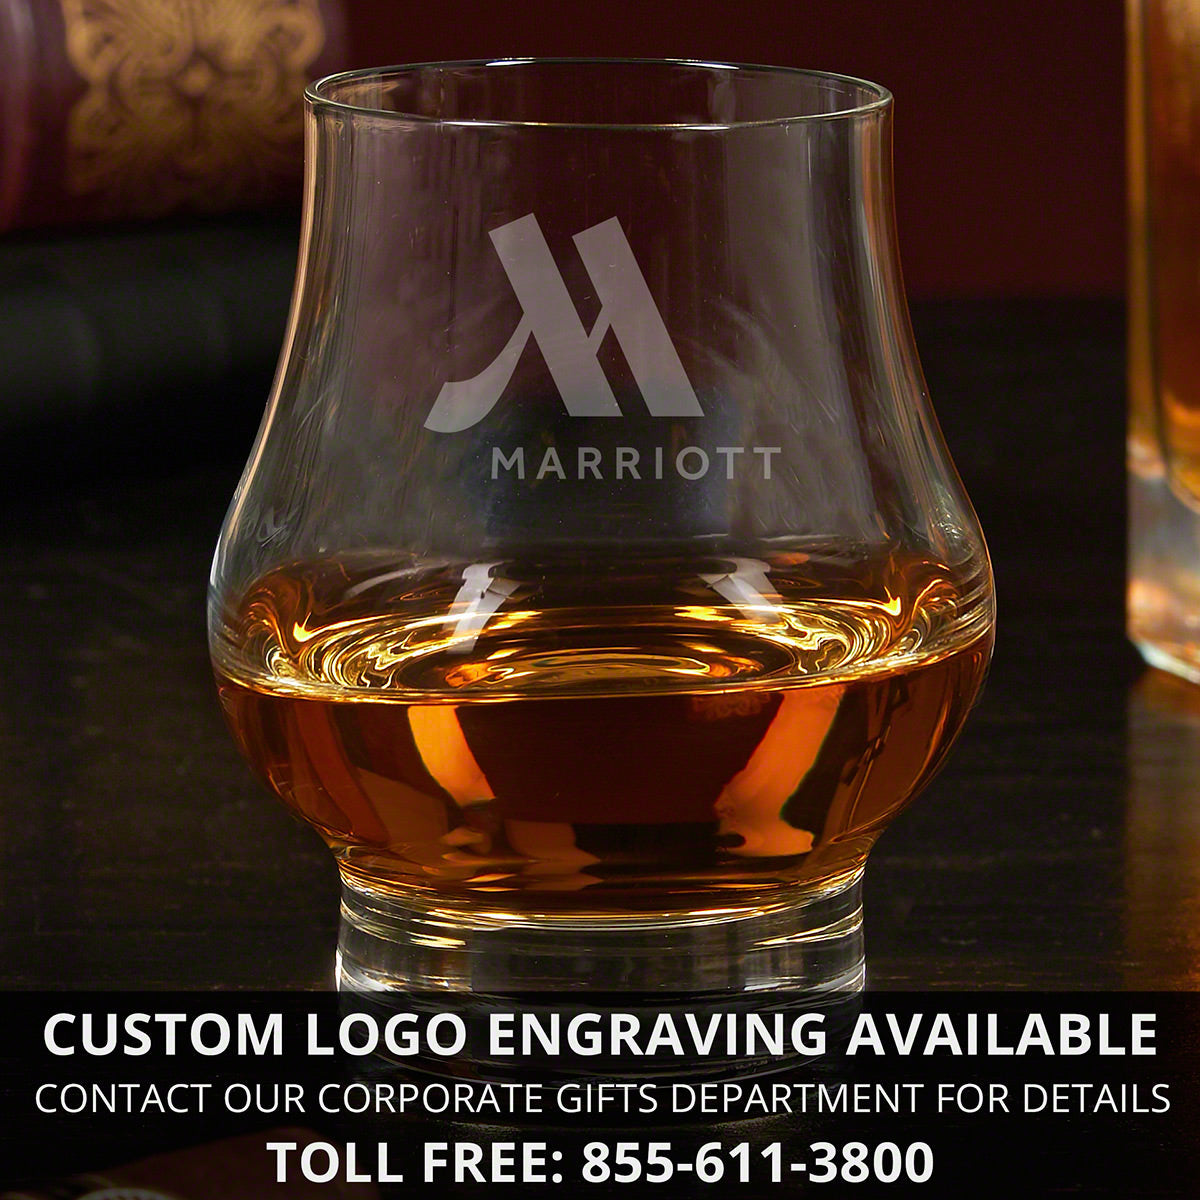 Custom Official Kentucky Bourbon Trail Bourbon Gift Set